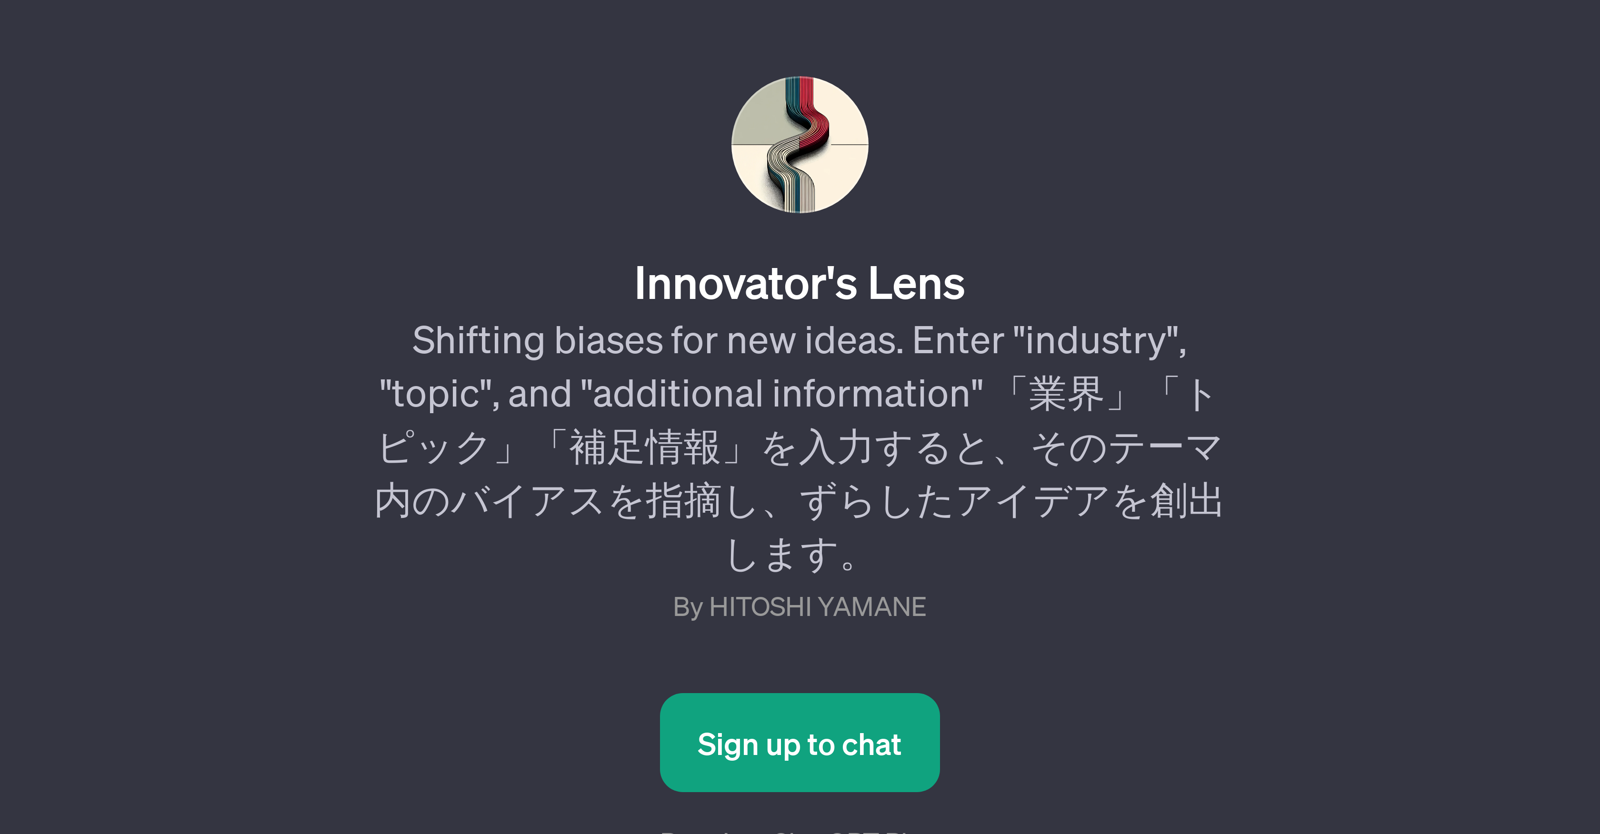 Innovator's Lens website